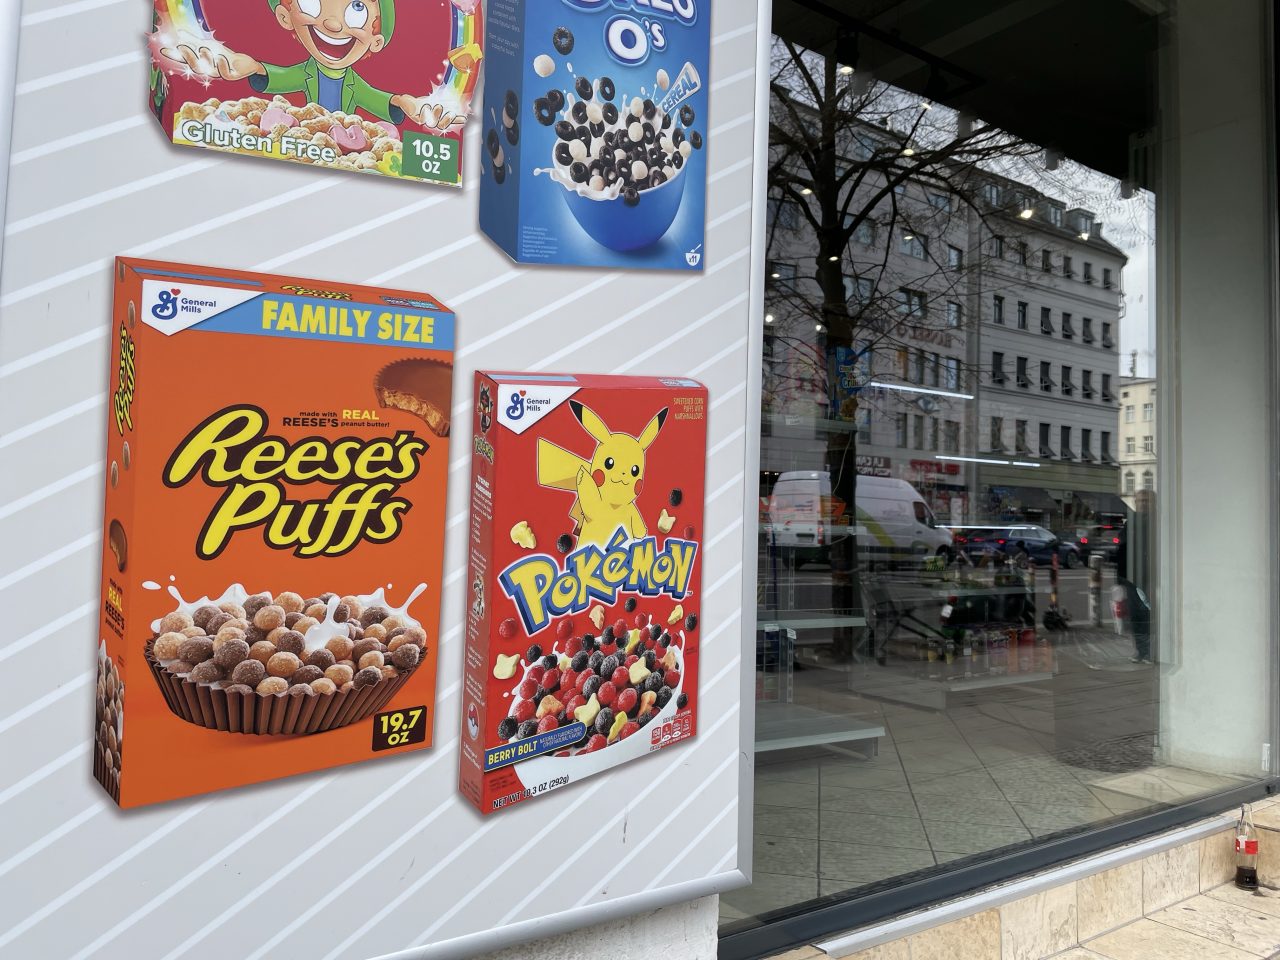 Schaufenster mit Werbung von Cerealien aus anderen Ländern